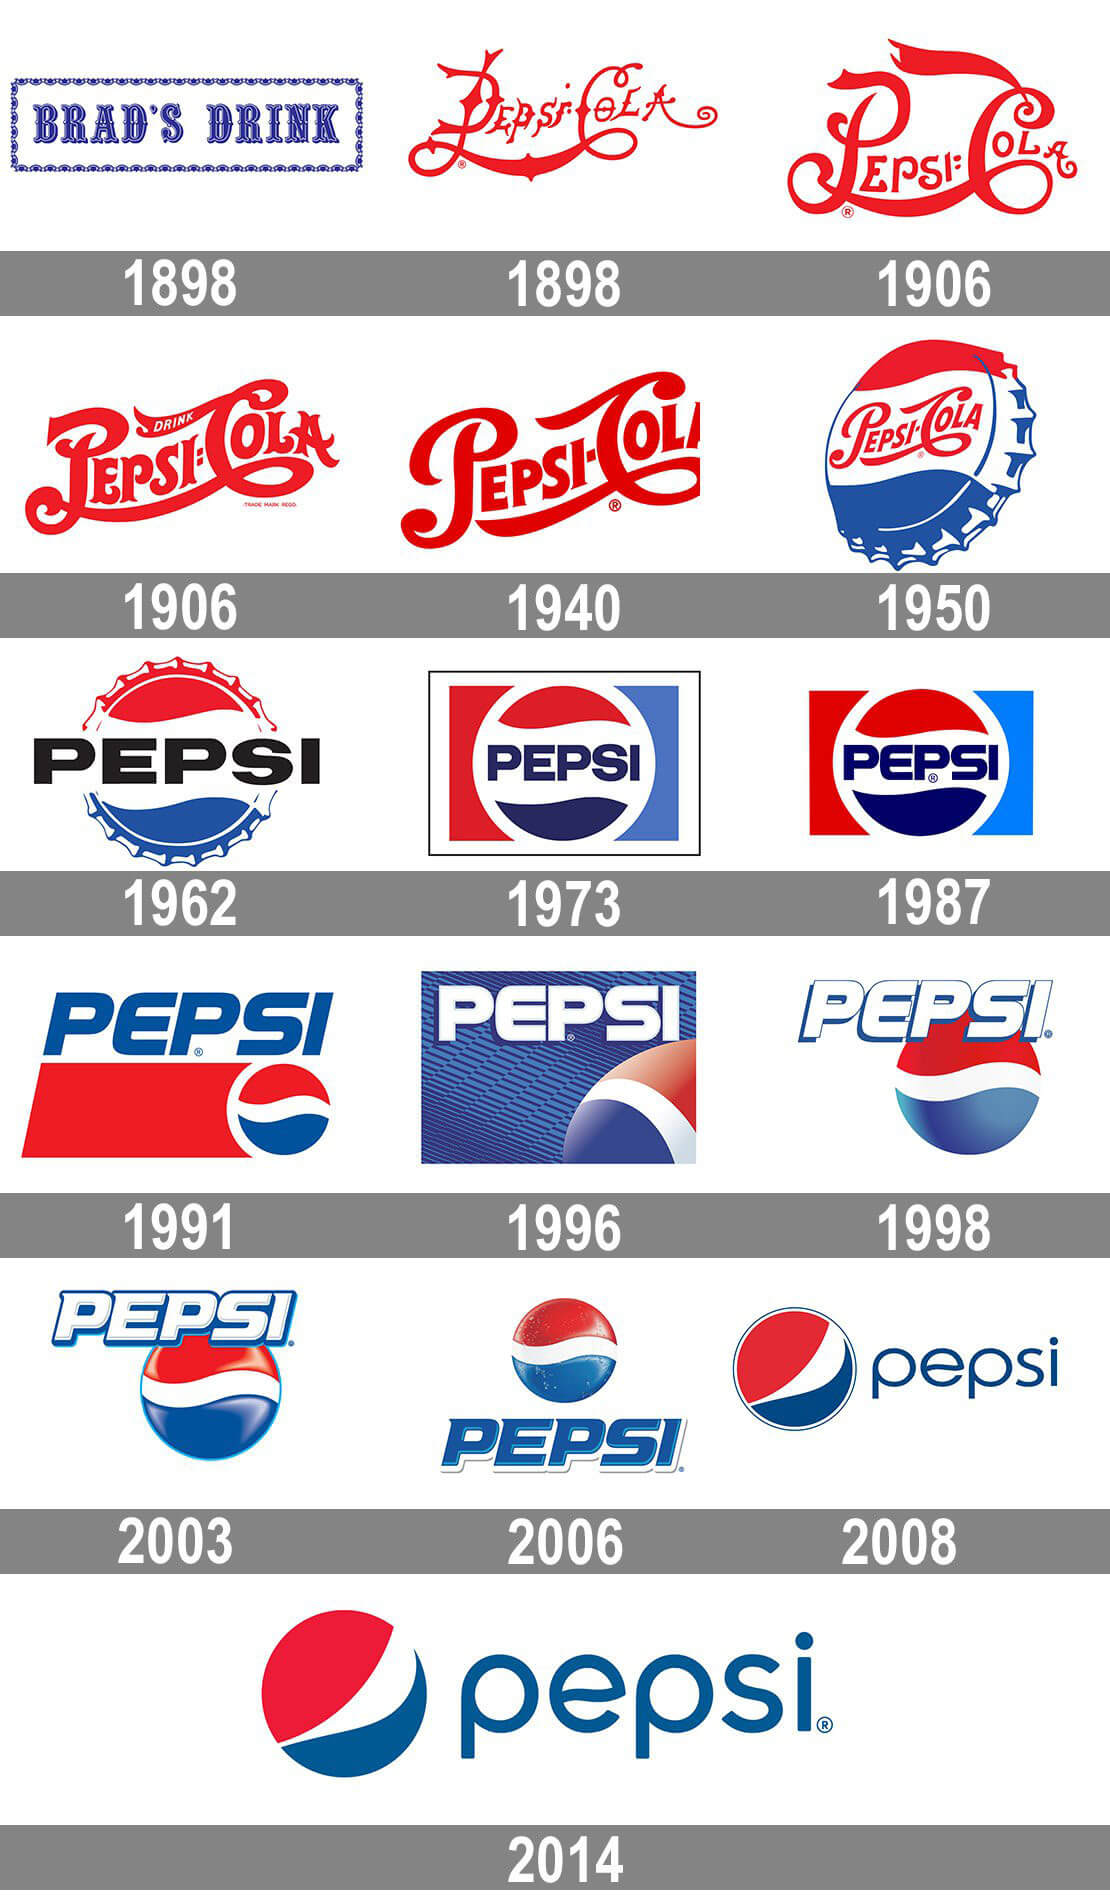 لوگوی پپسی - لوگوی پپسی و تغییرات آن در گذر زمان(از 1898 تا الان)